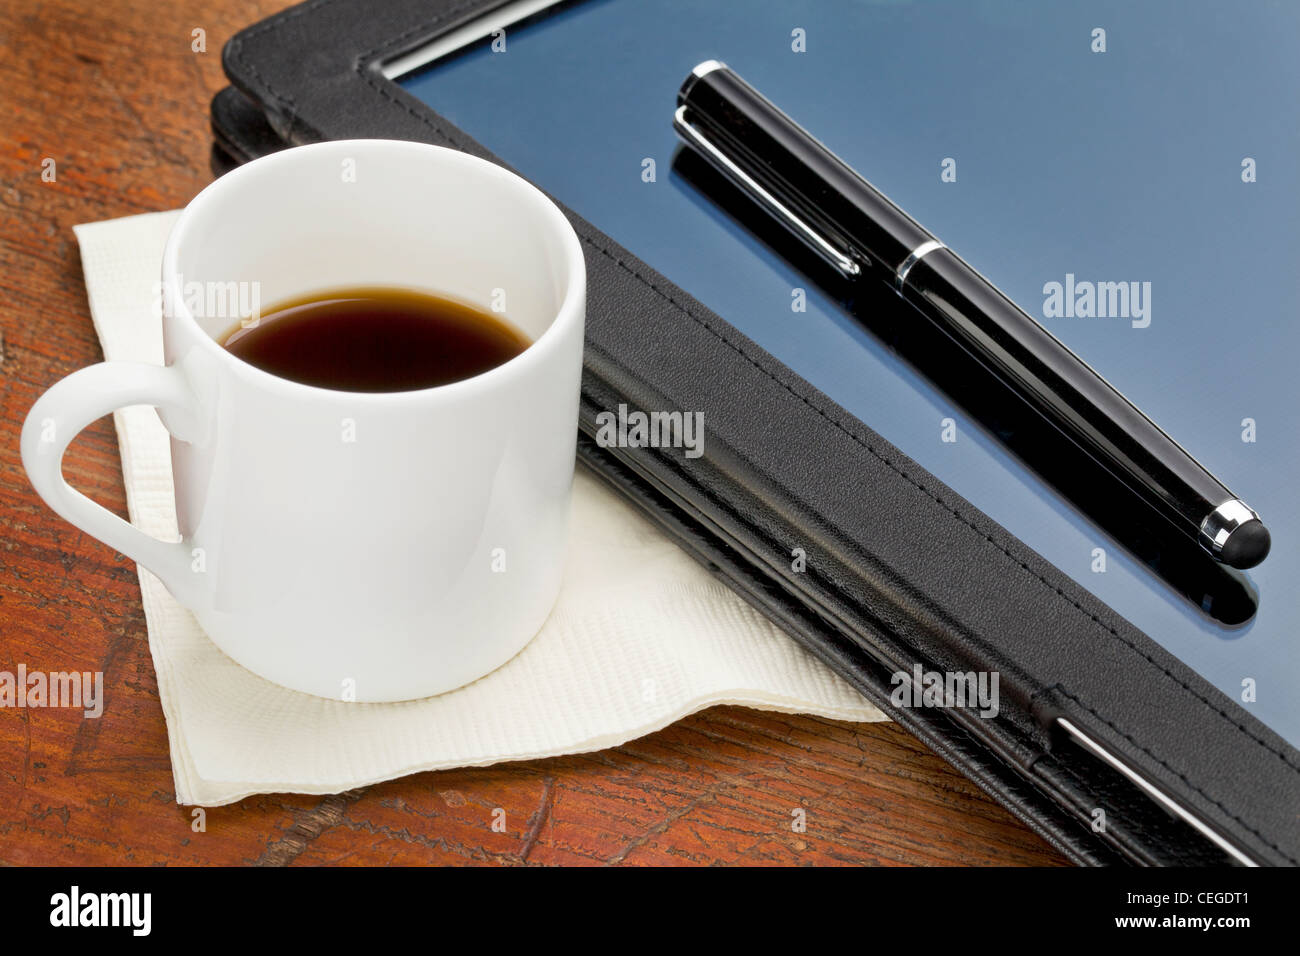 Tasse de café expresso, stylet pour tablette et ordinateur en cas de cuir noir sur un bois grunge Banque D'Images